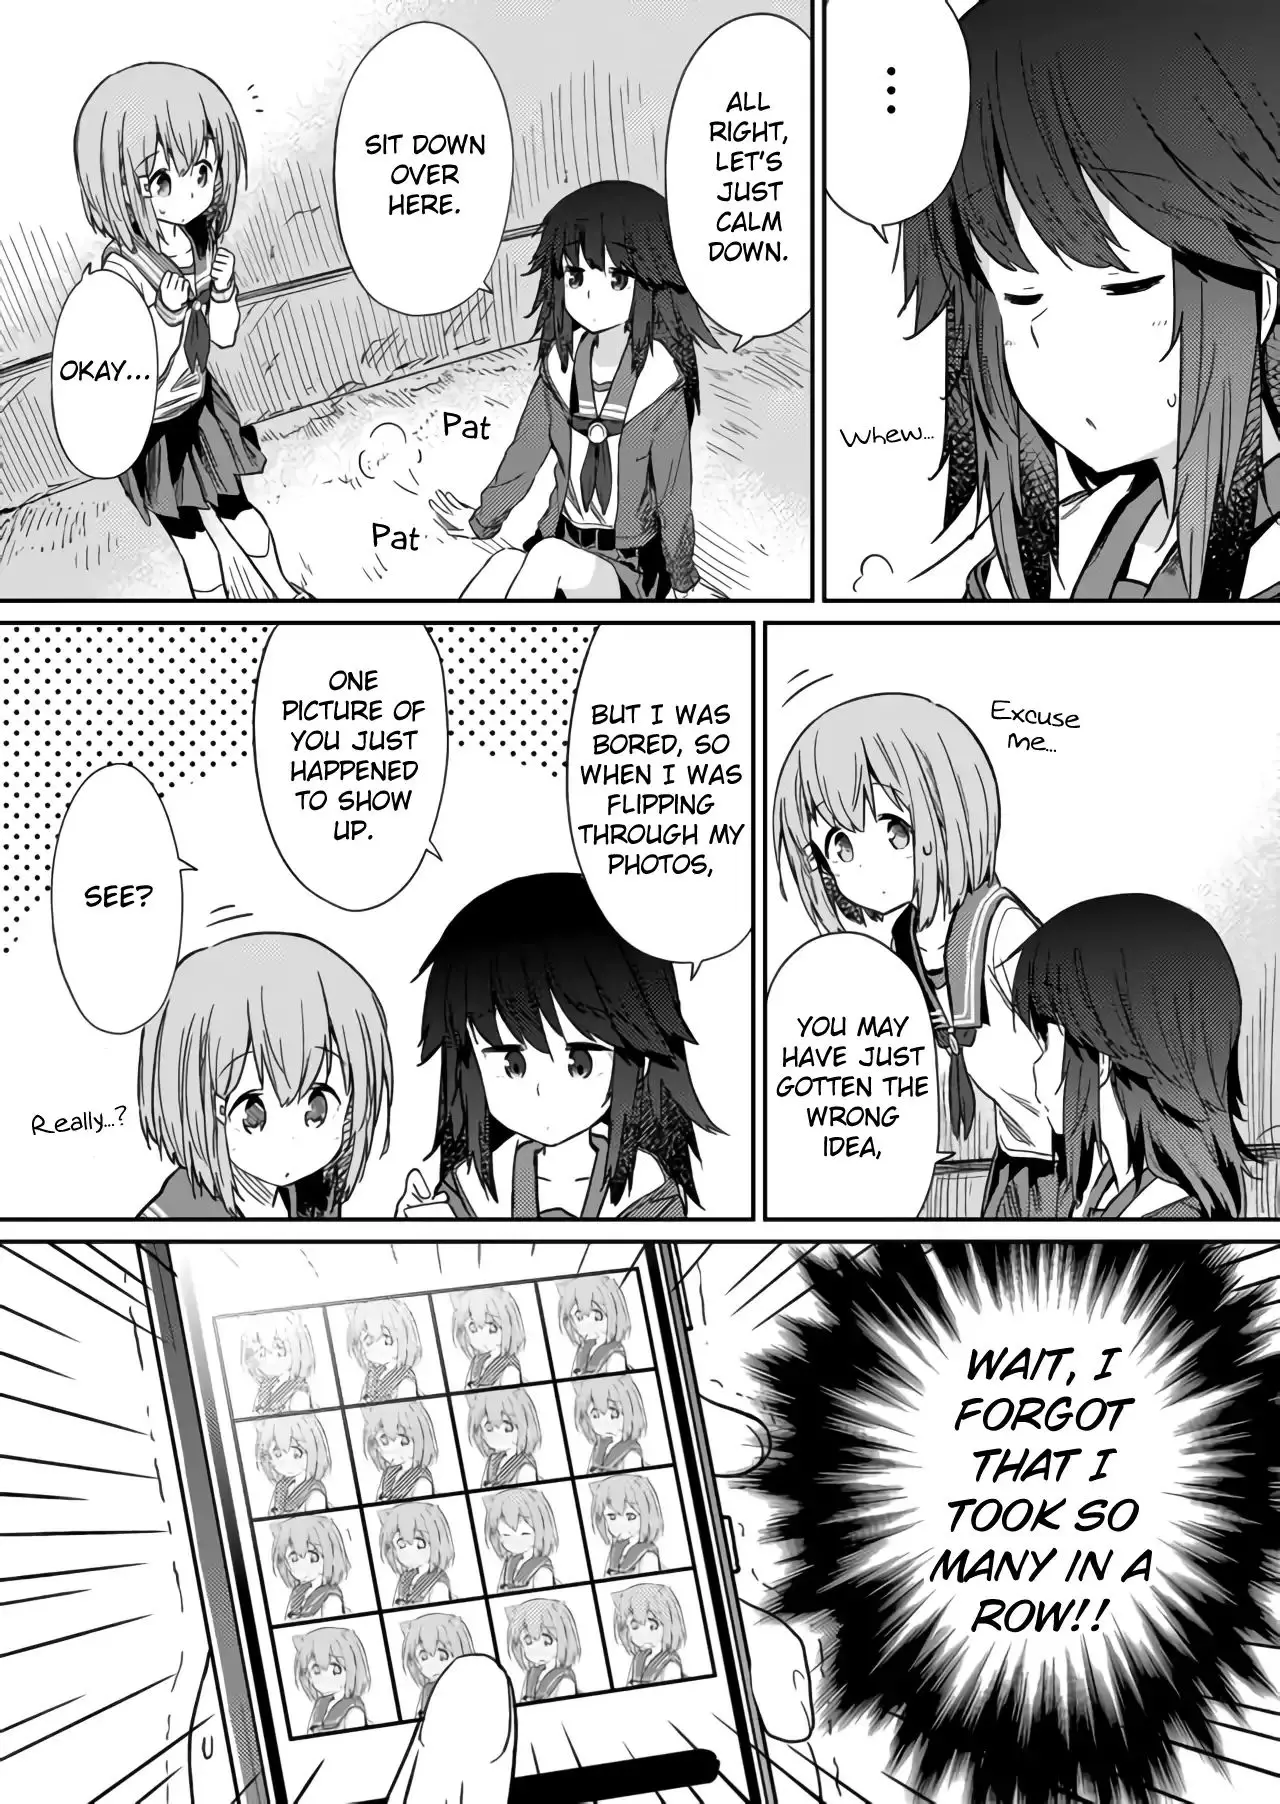 Hino-San No Baka - 13 page 7